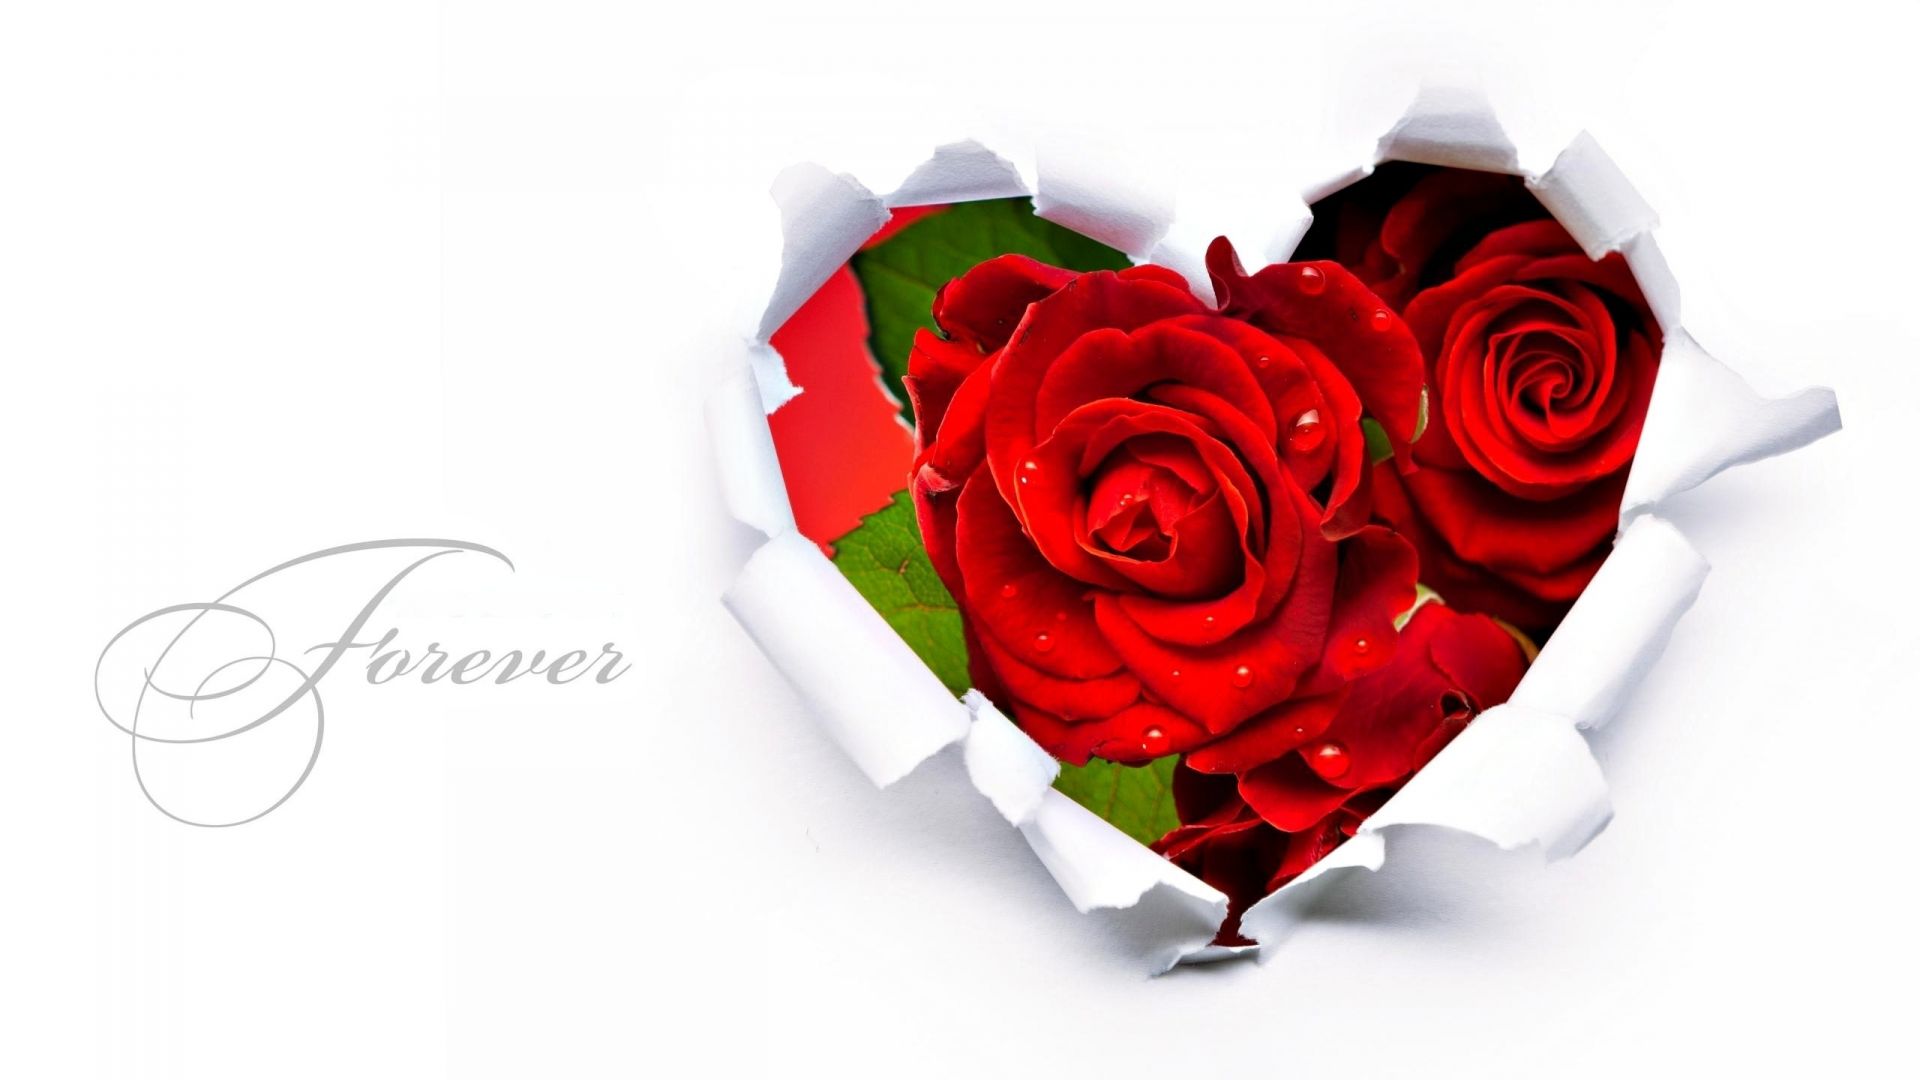 розы романтика подарок любовь юбилей романтический цветок лепесток свадьба день рождения праздник букет брак цветочные блюминг